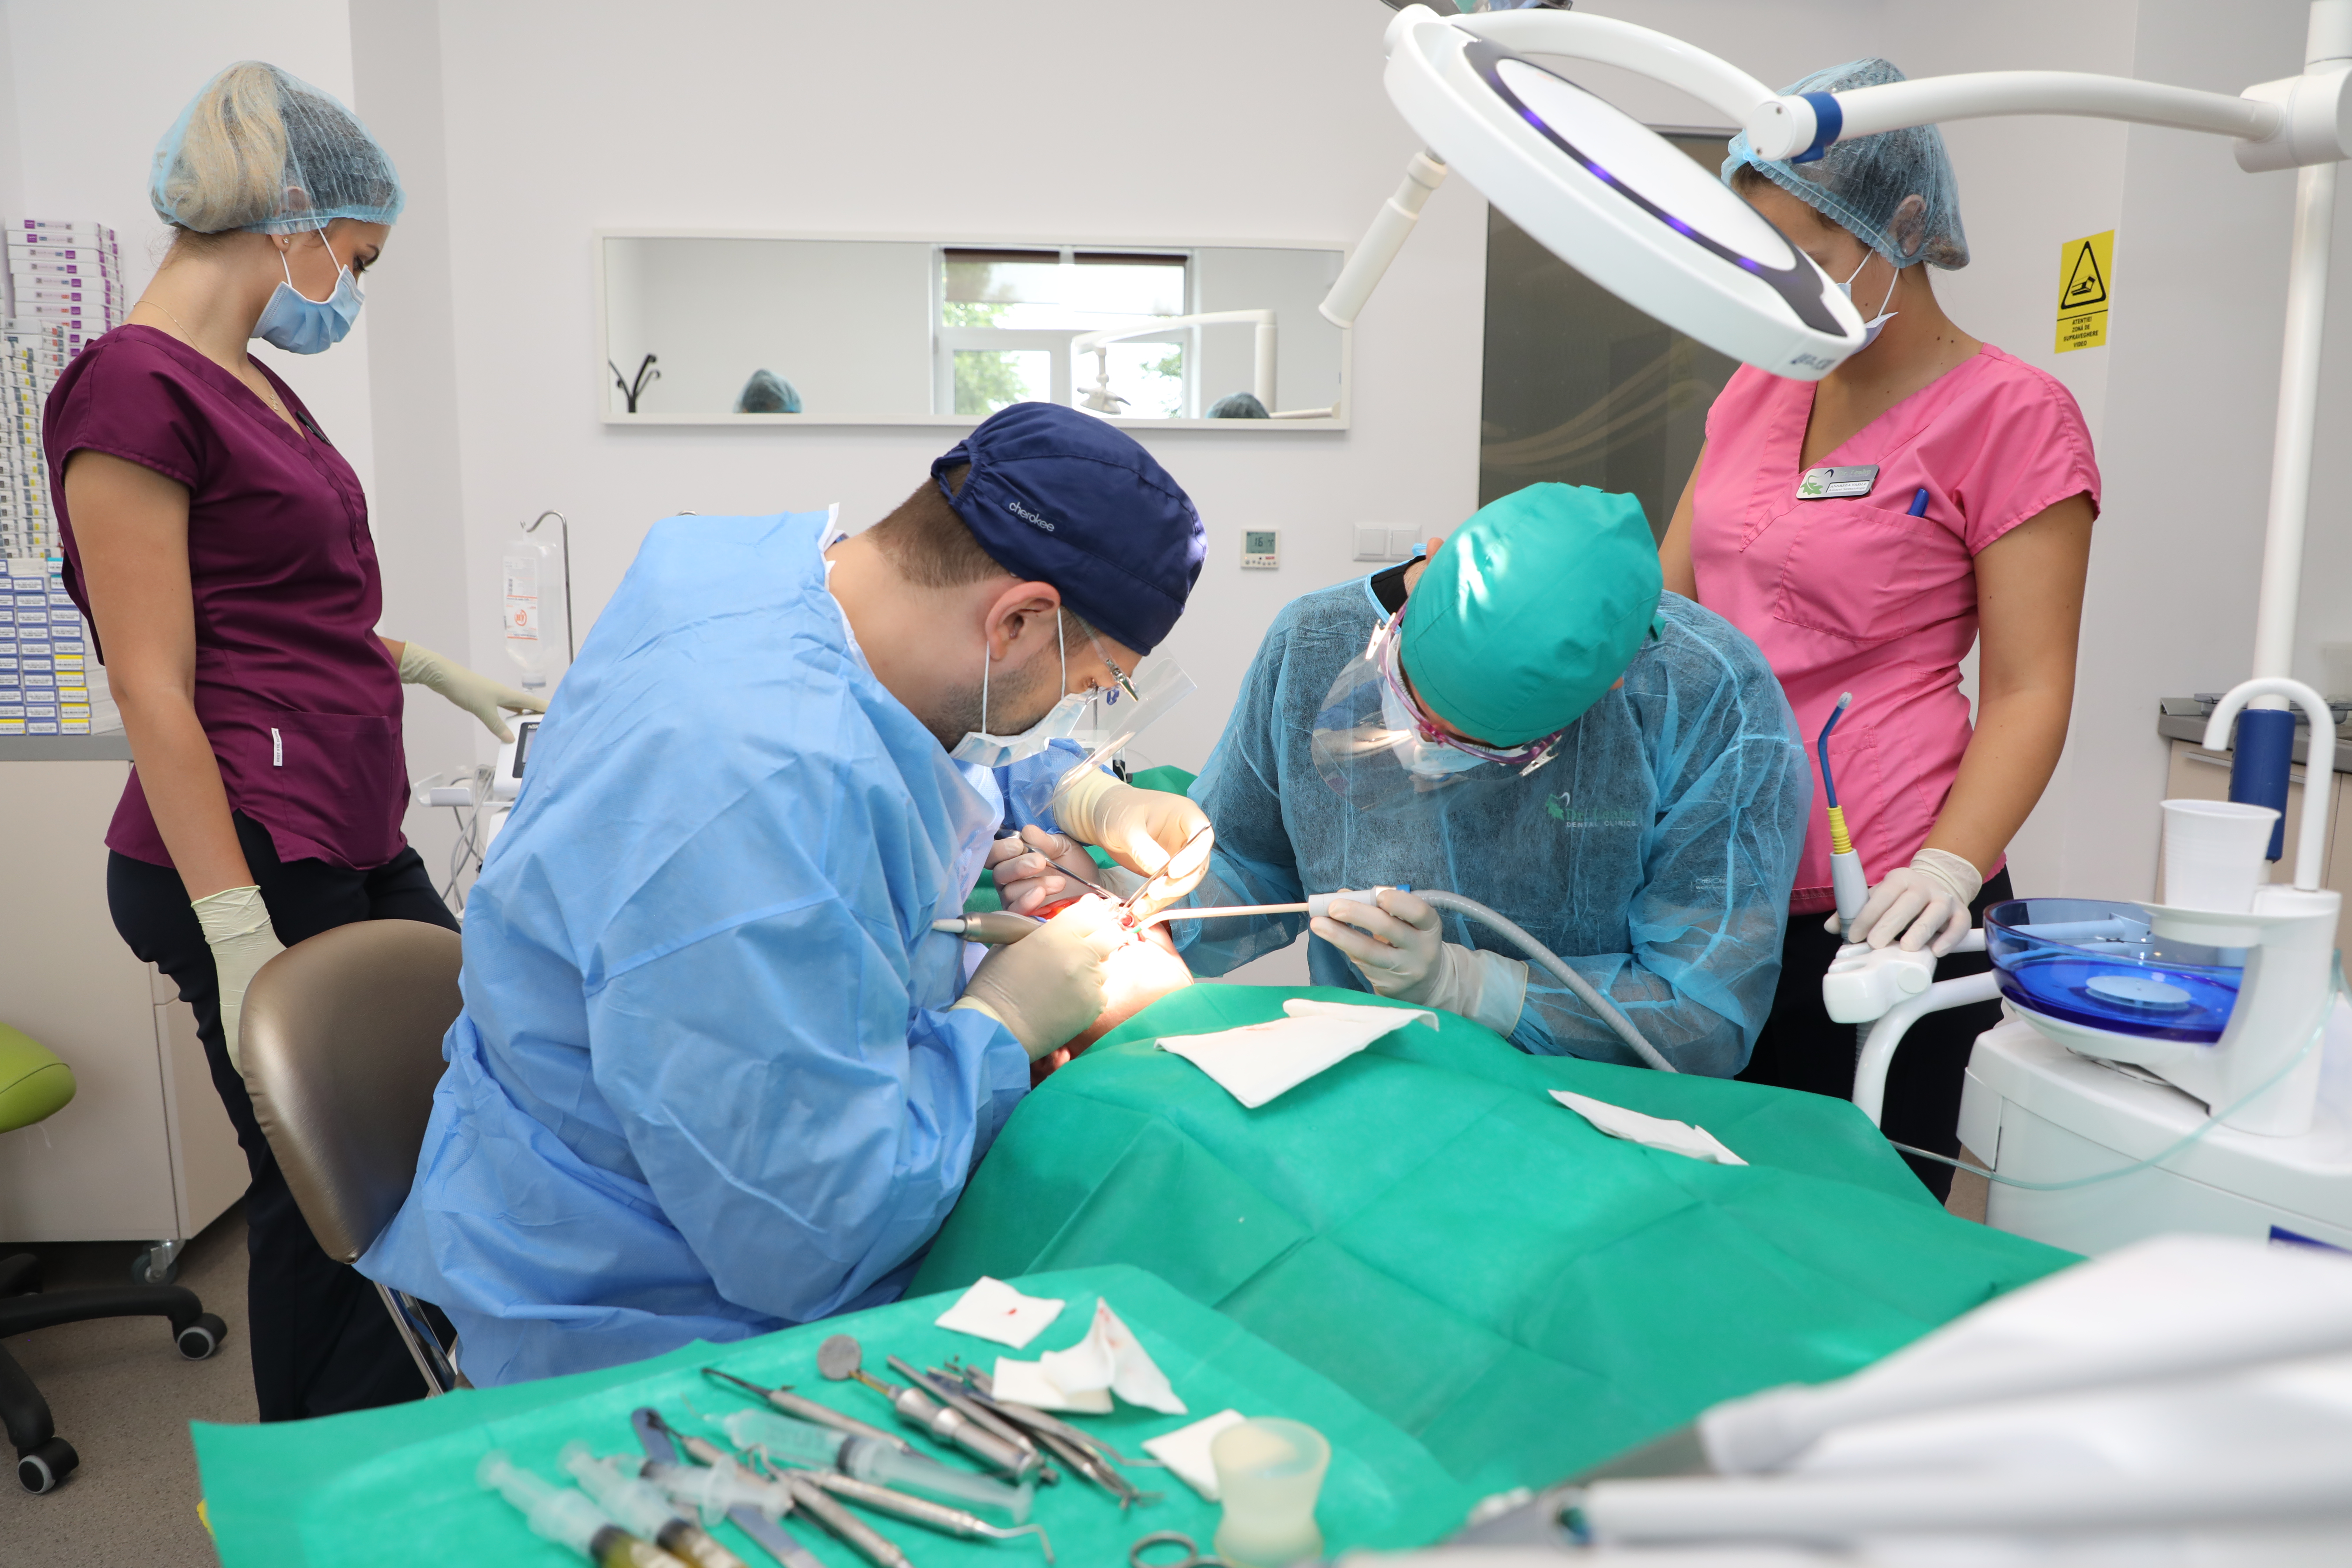 Ce înseamnă implanturile dentare Sky fast&fixed de la Bredent? Câte implanturi se inserează și cui se adresează acestea?